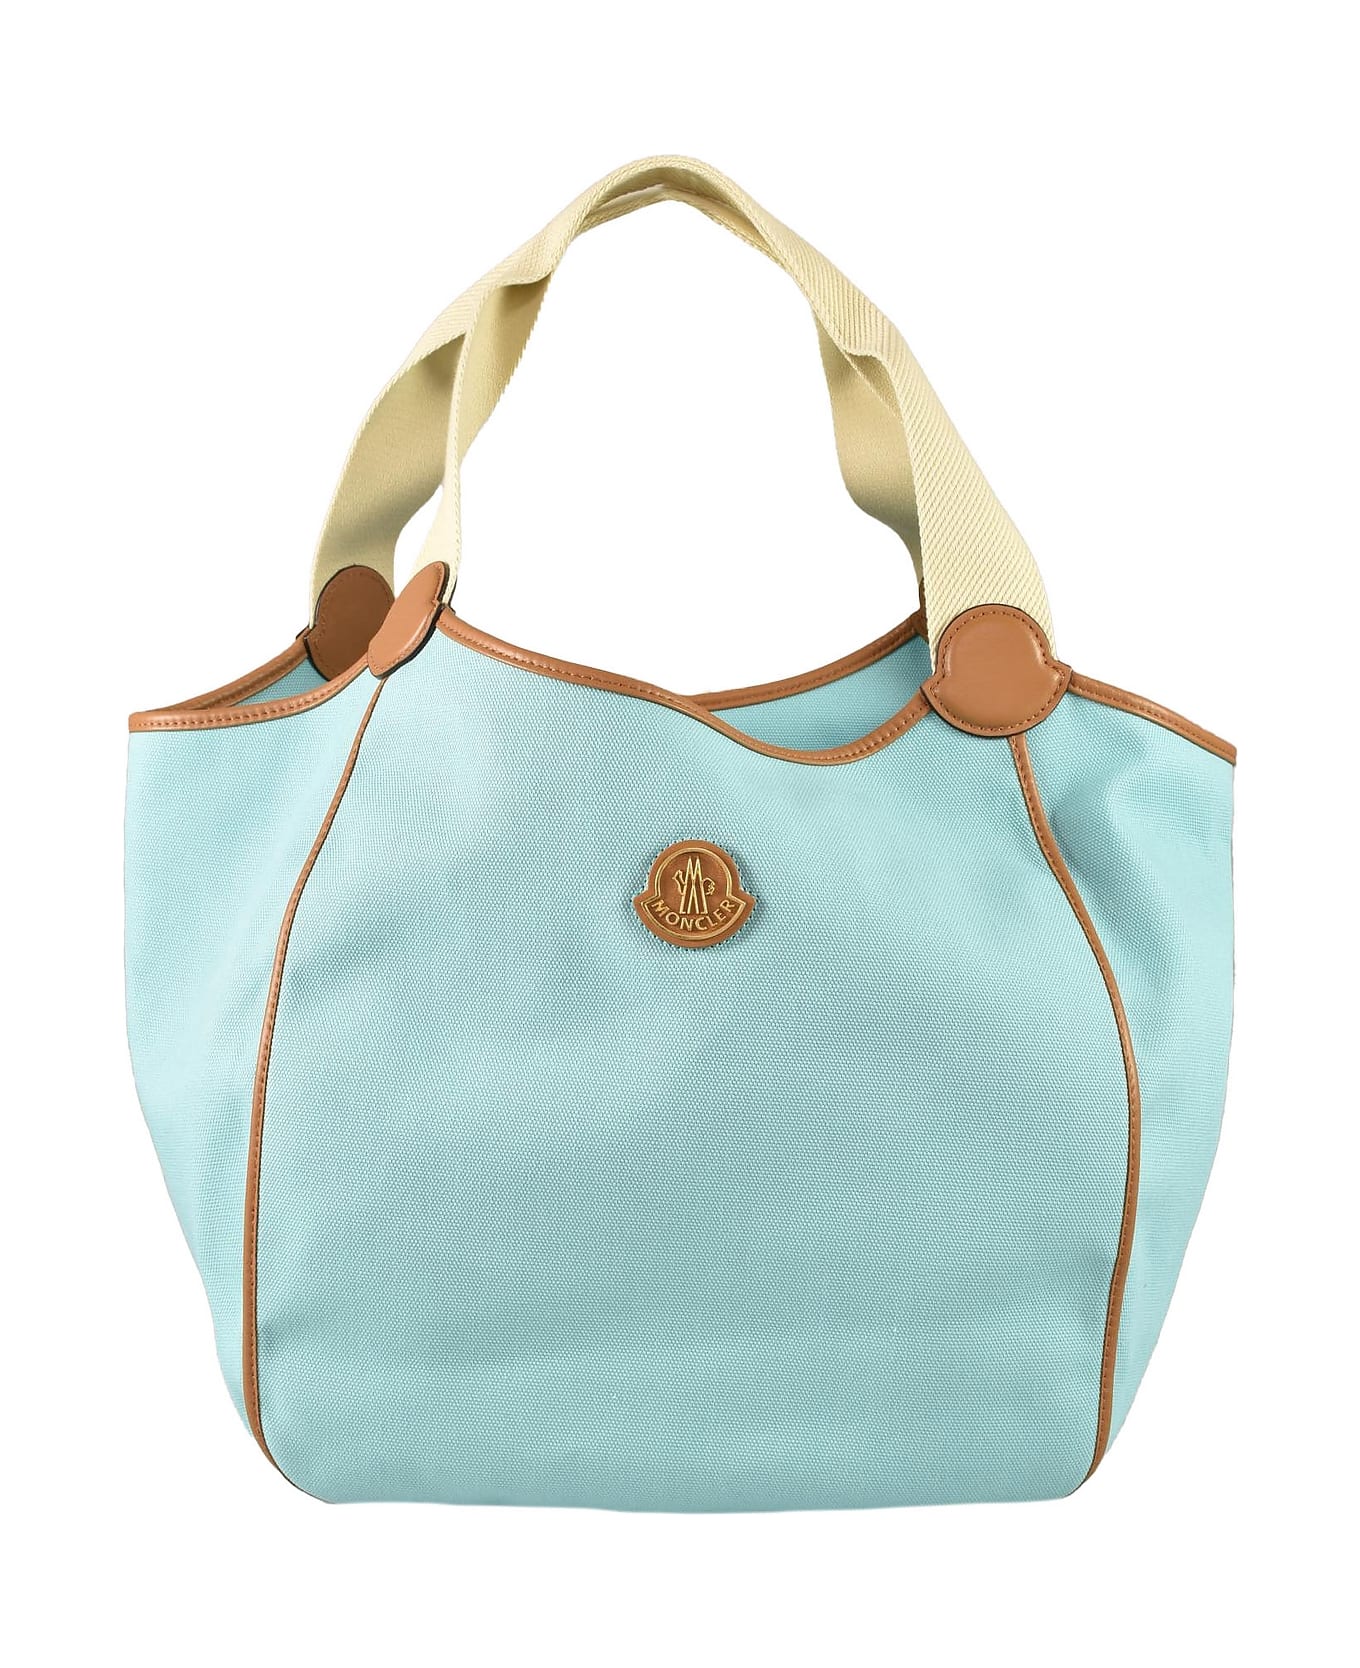 Moncler Women's Aqua Handbag - Aqua